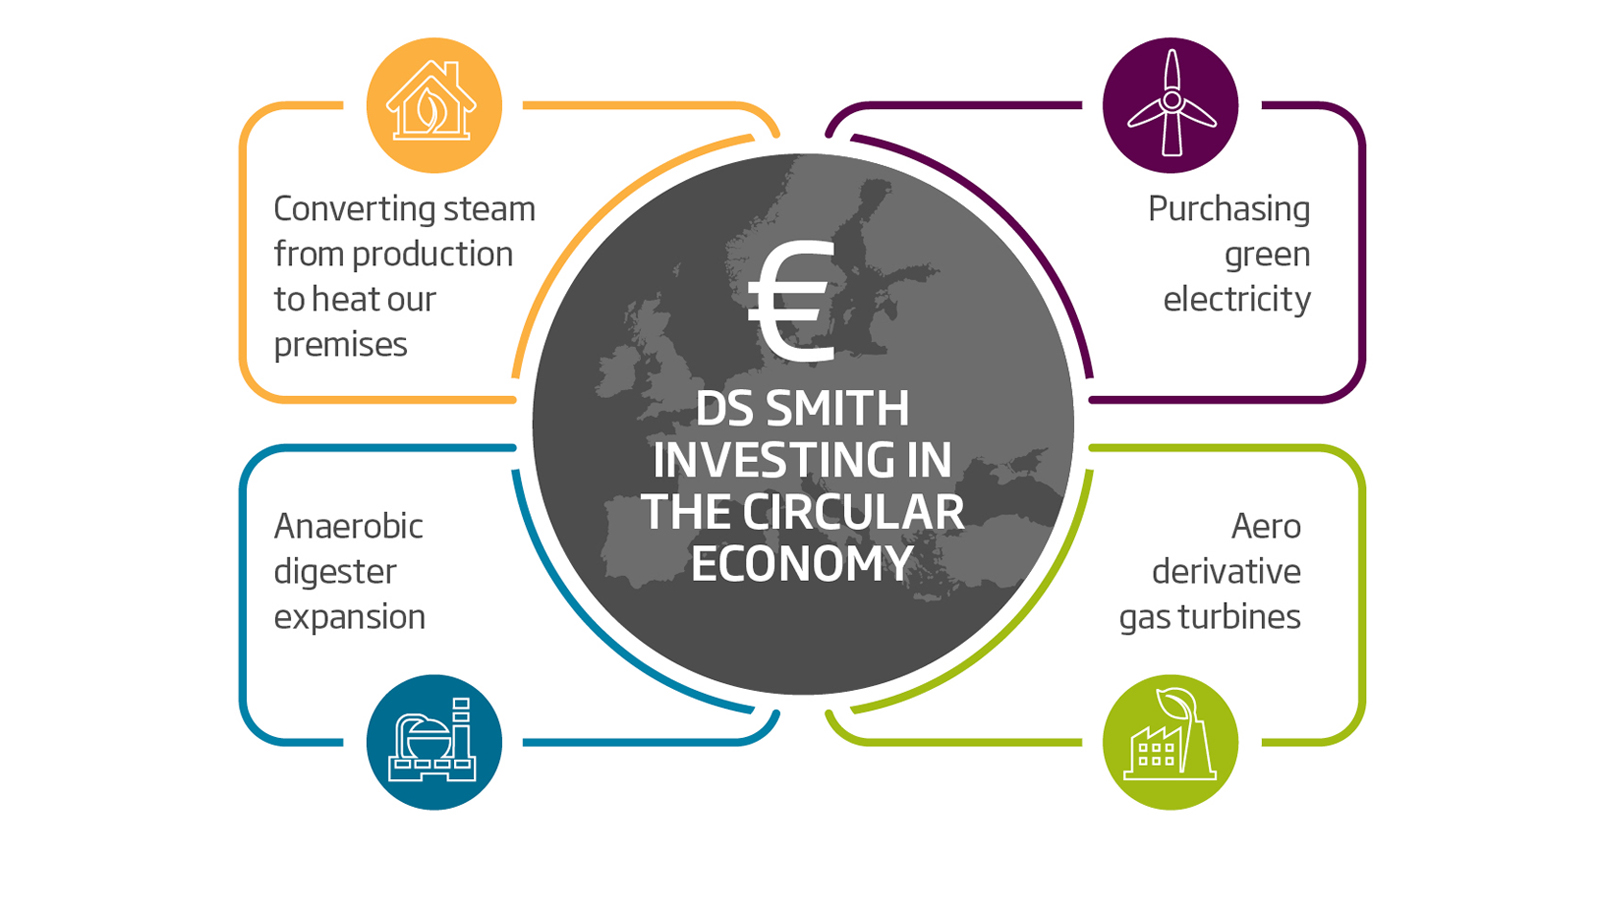 In ganz Europa investieren wir strategisch in Ökostrom, erneuerbare Energien und Energieeffizienz